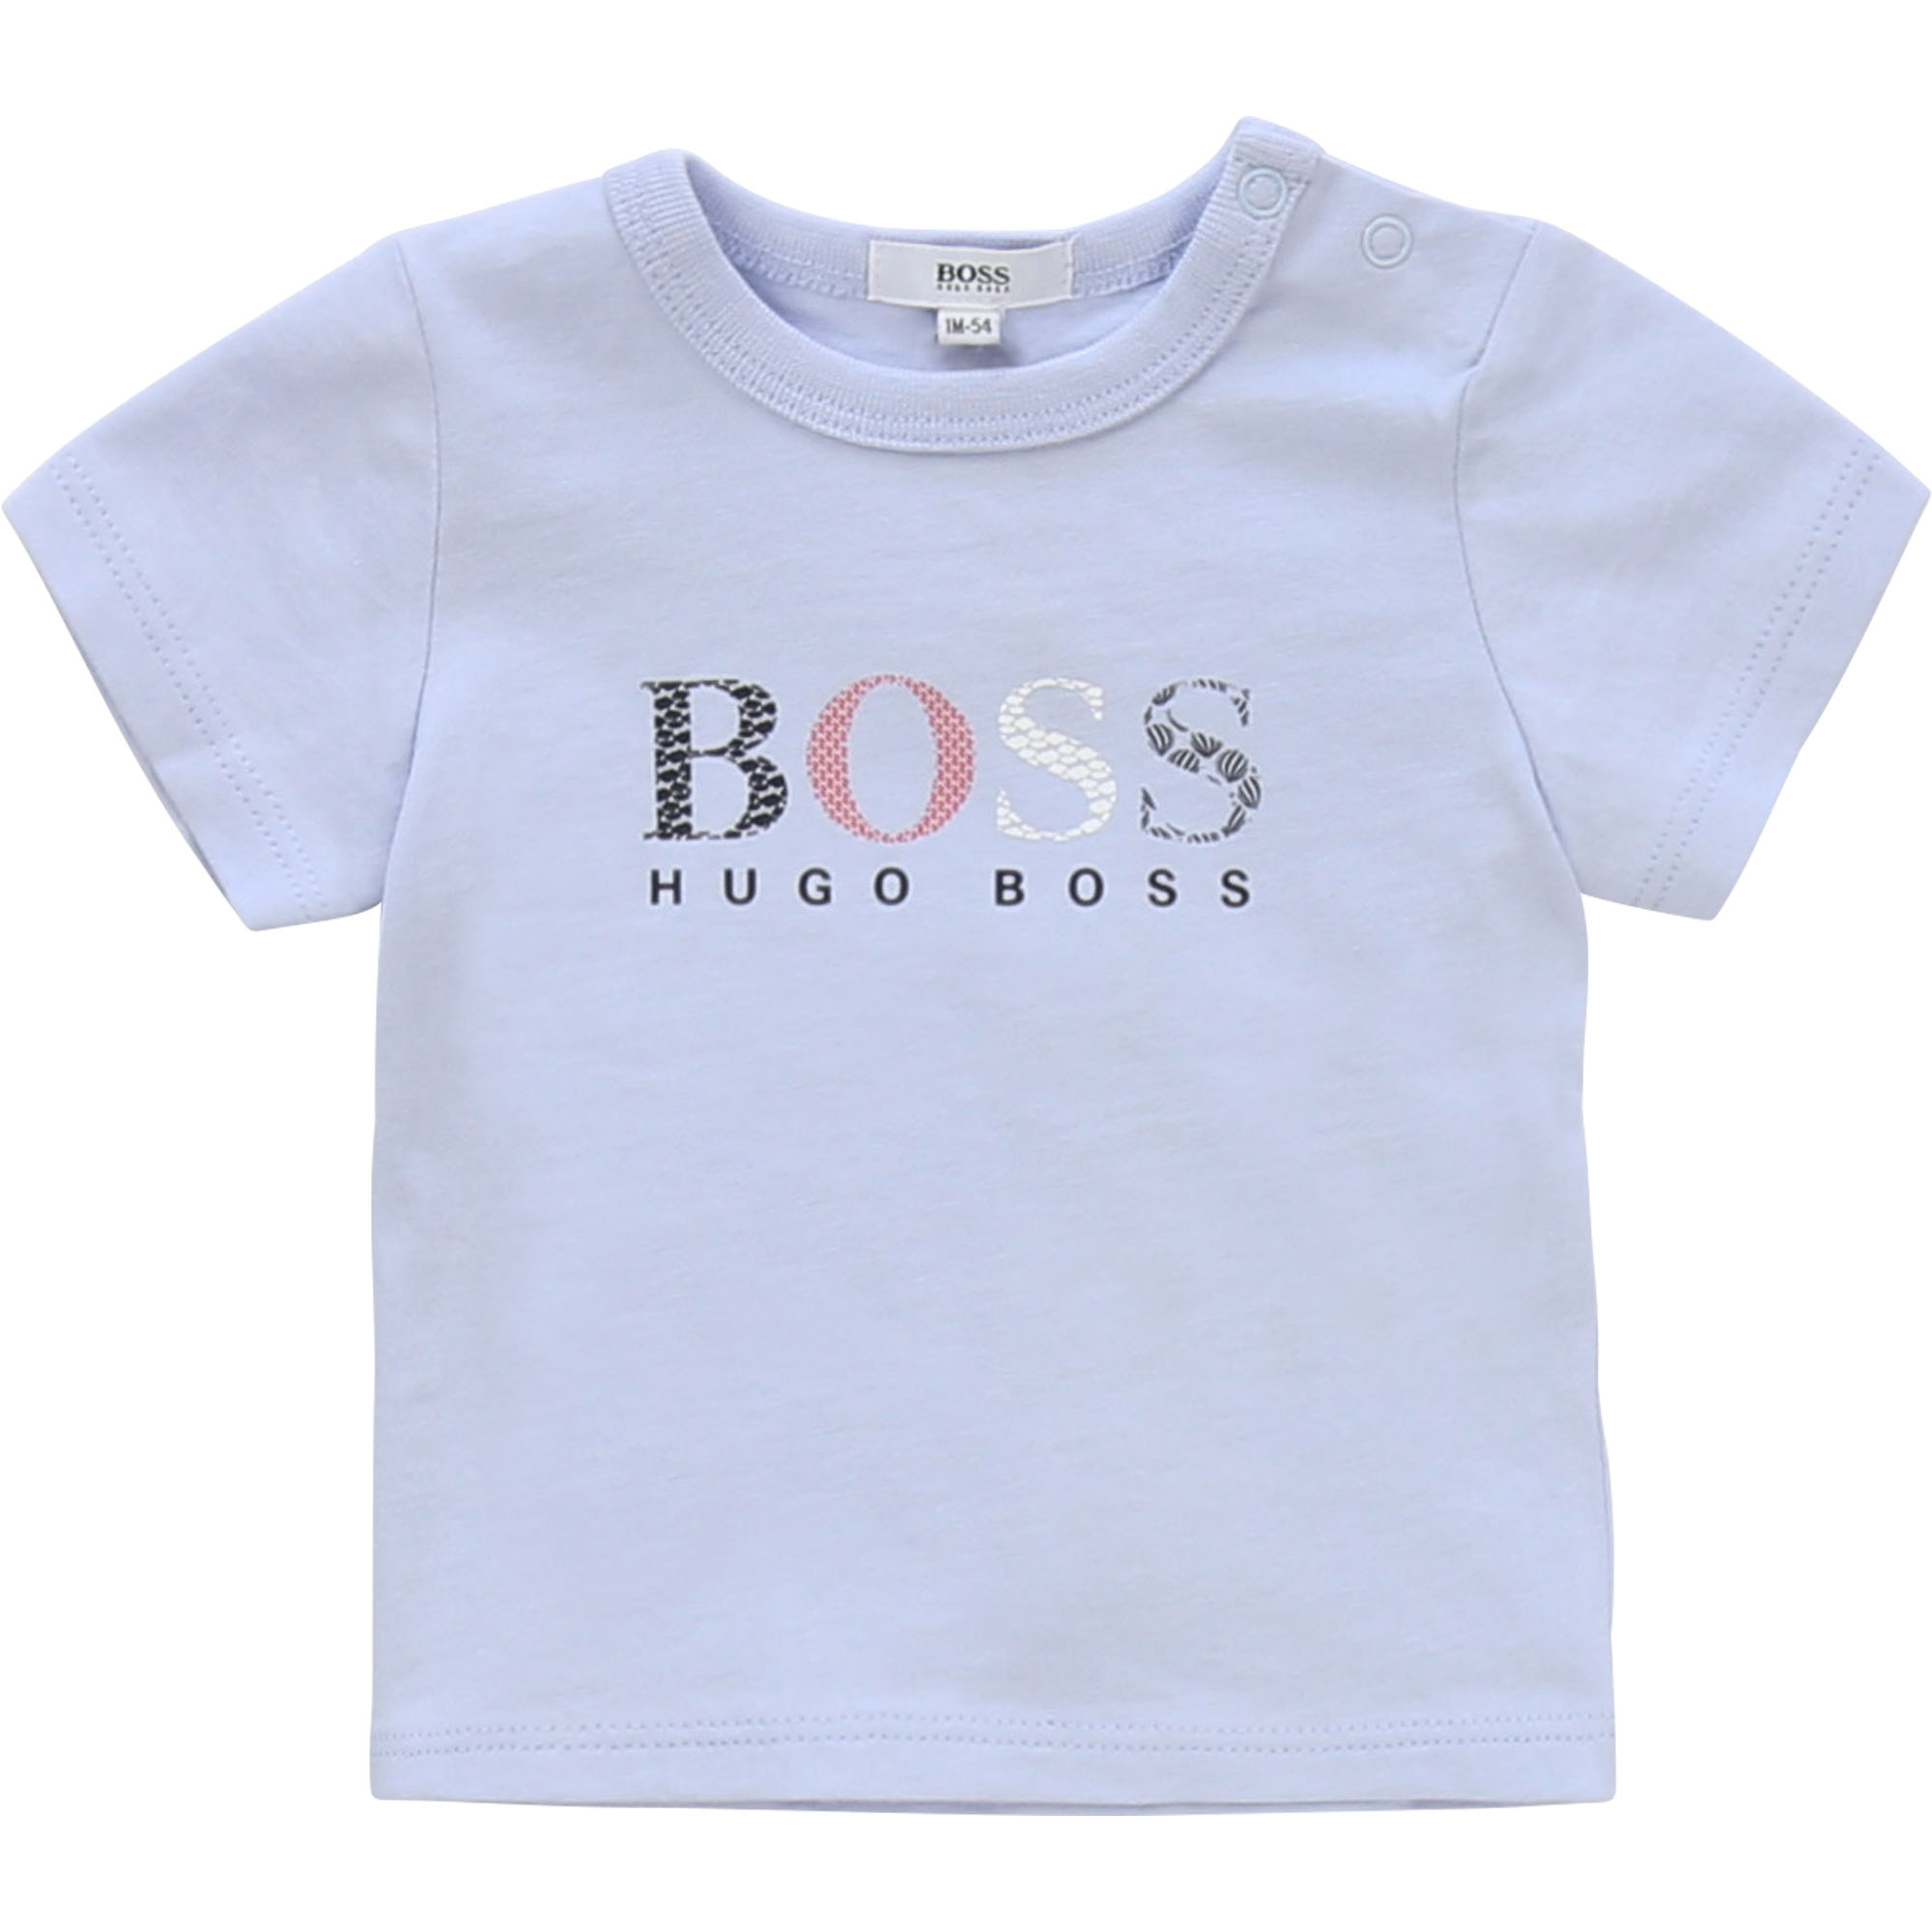 hugo boss baby t shirt